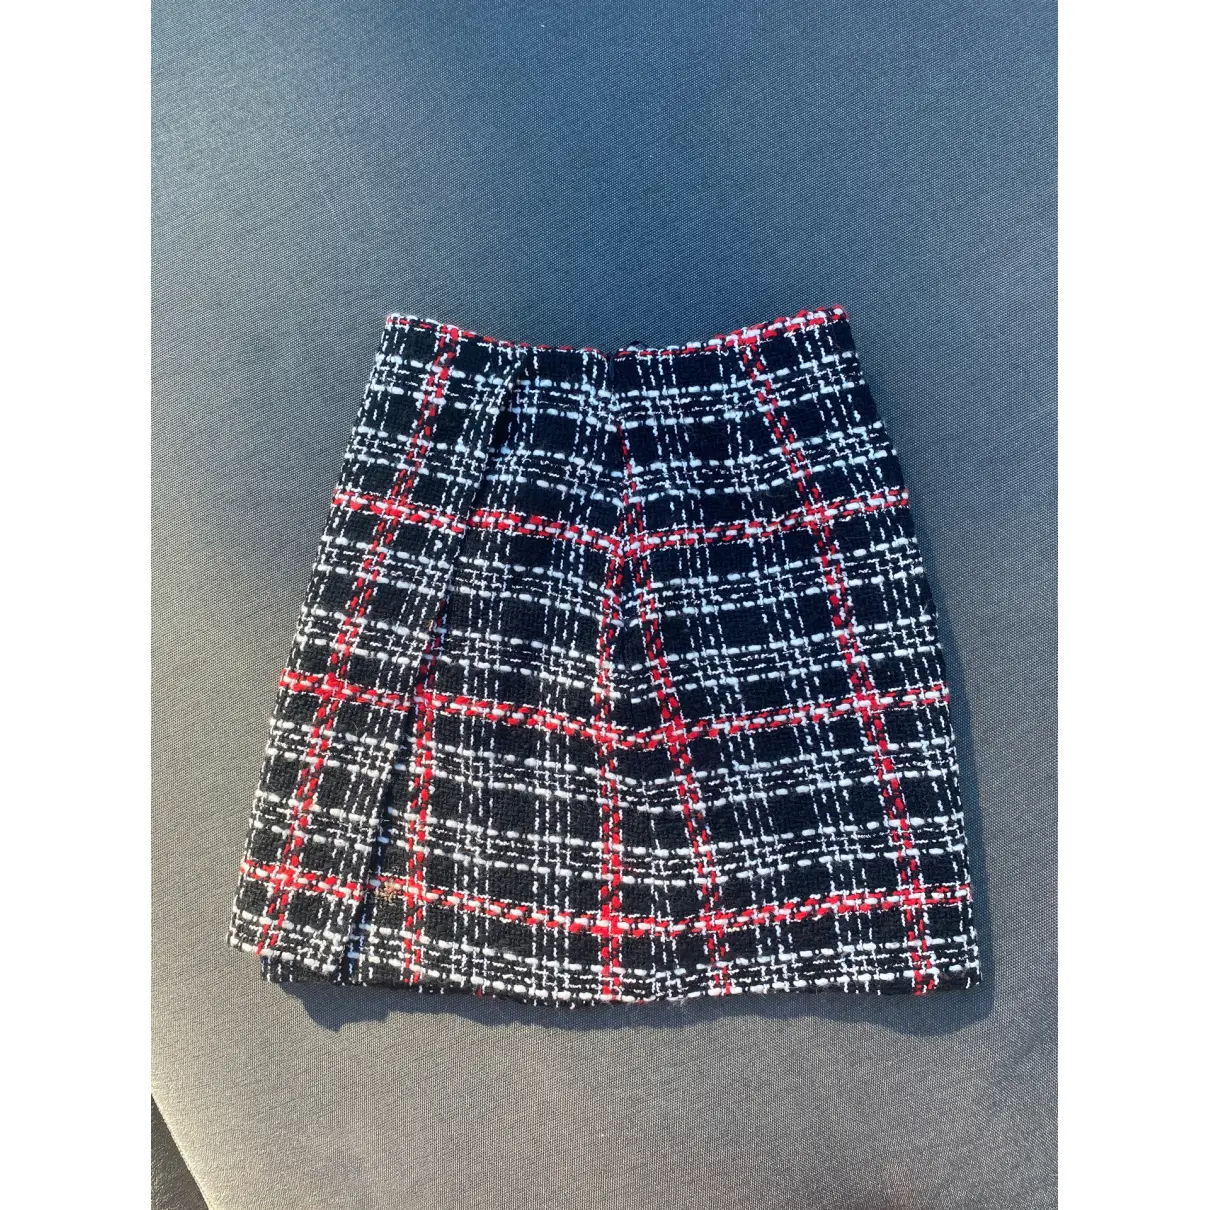 Buy Massimo Dutti Mini skirt online